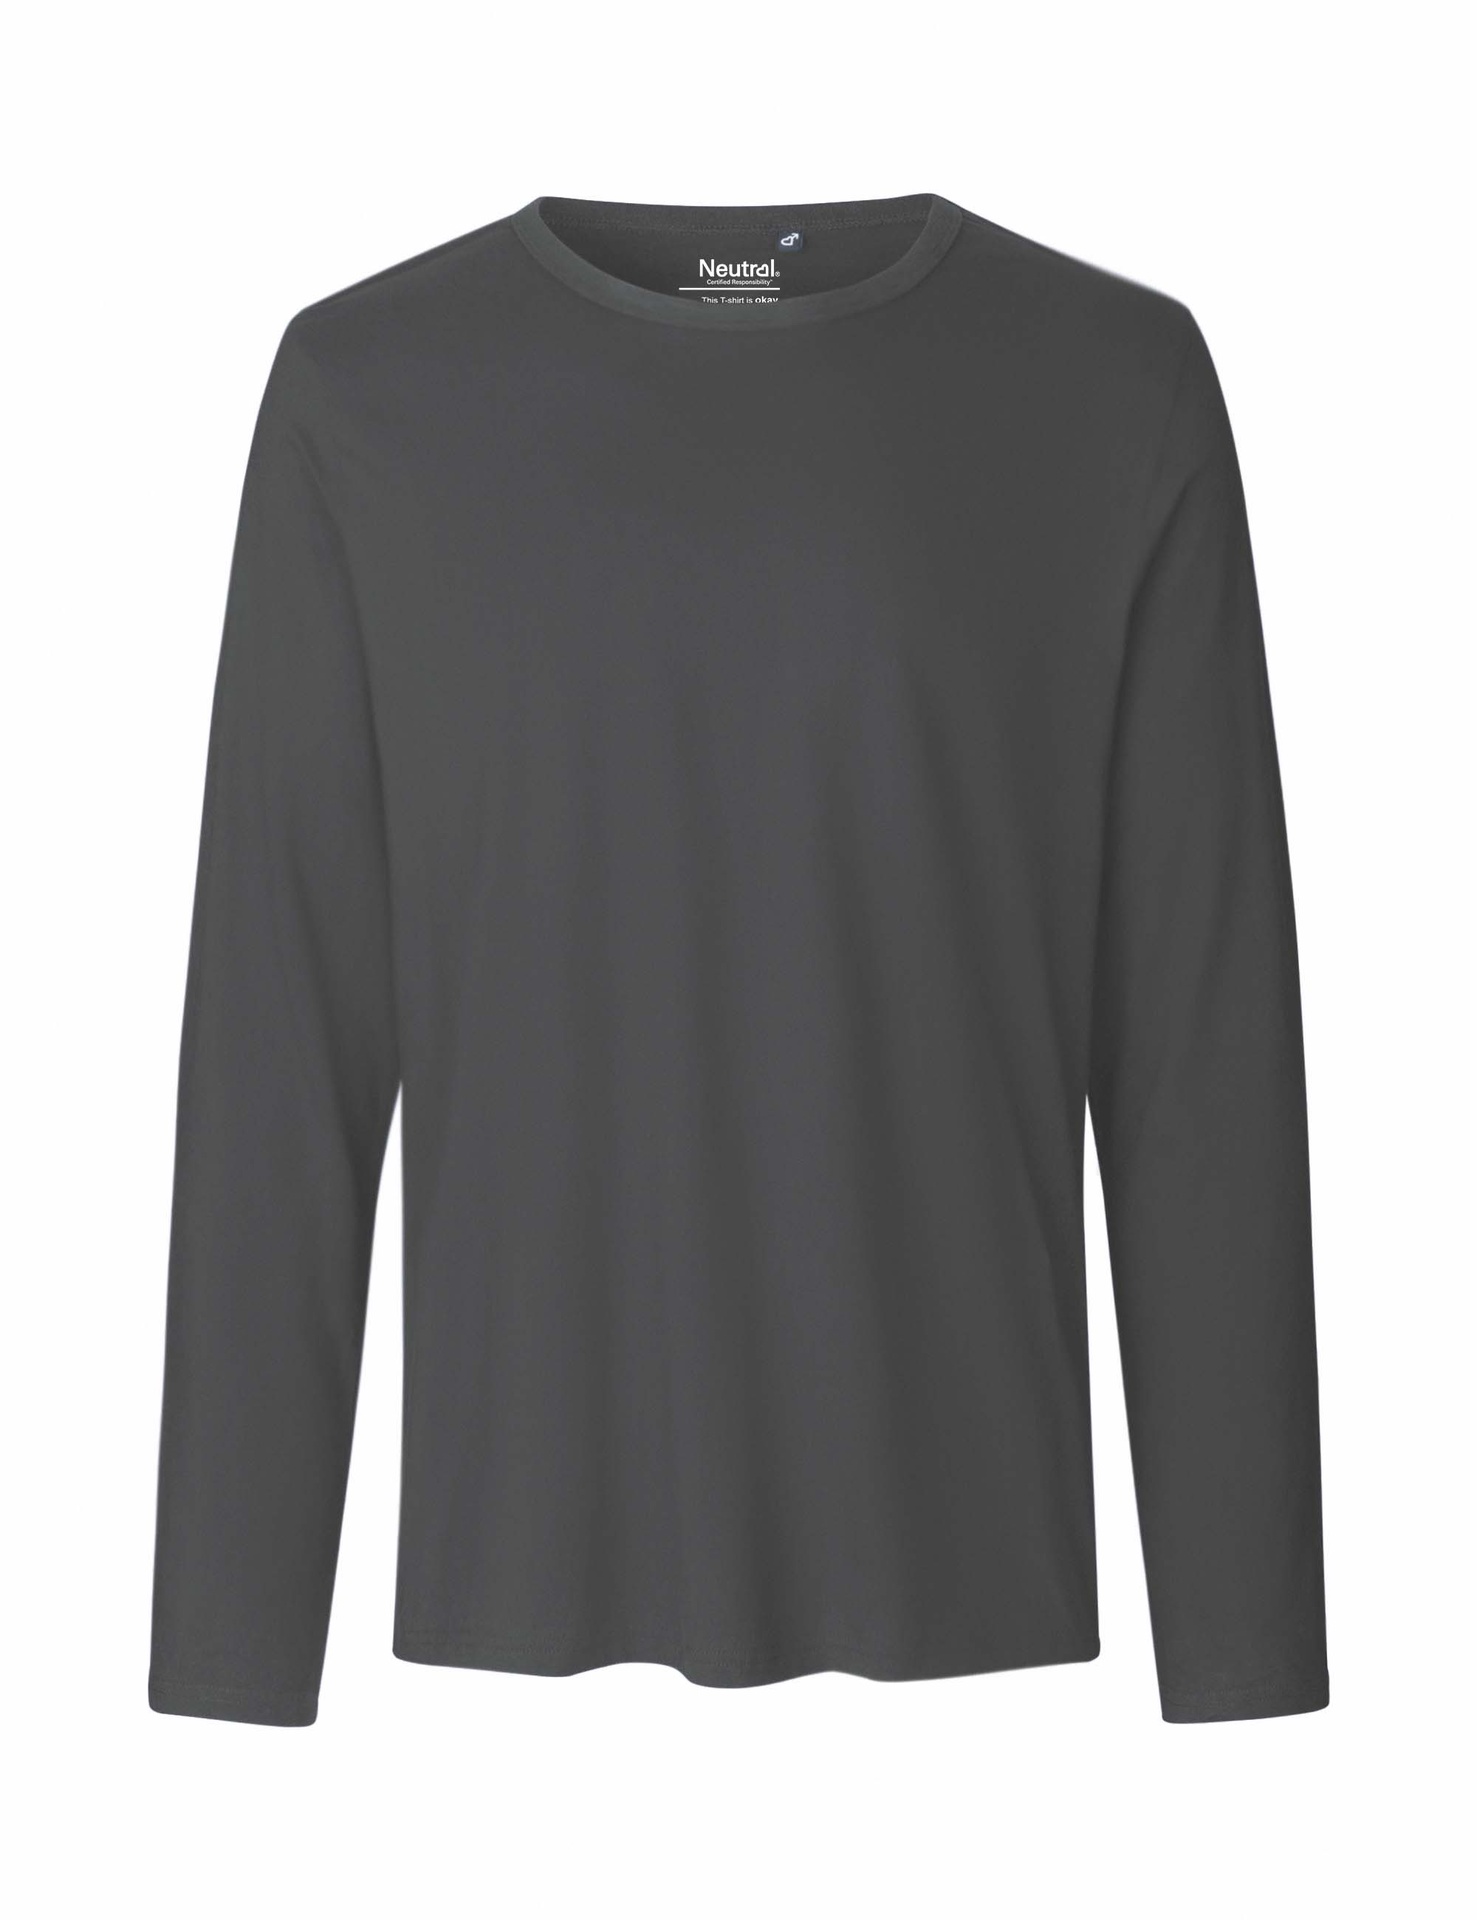 [PR/02365] Mens Long Sleeve T-Shirt (Charcoal 06, XL)